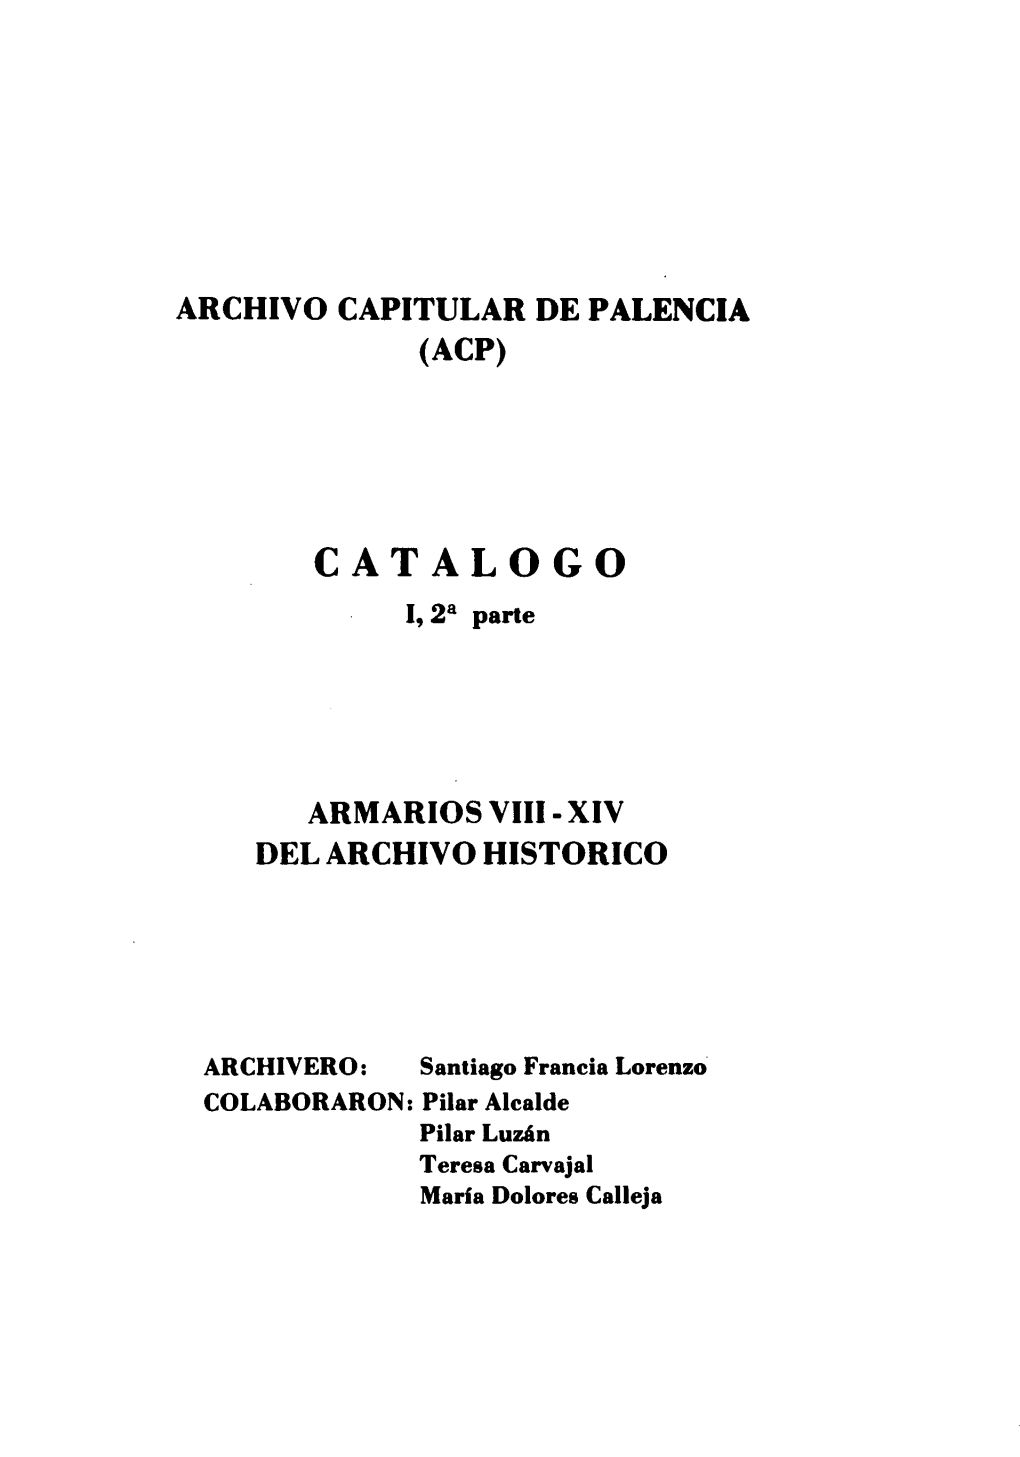 CATALOGO I, 28 Parte